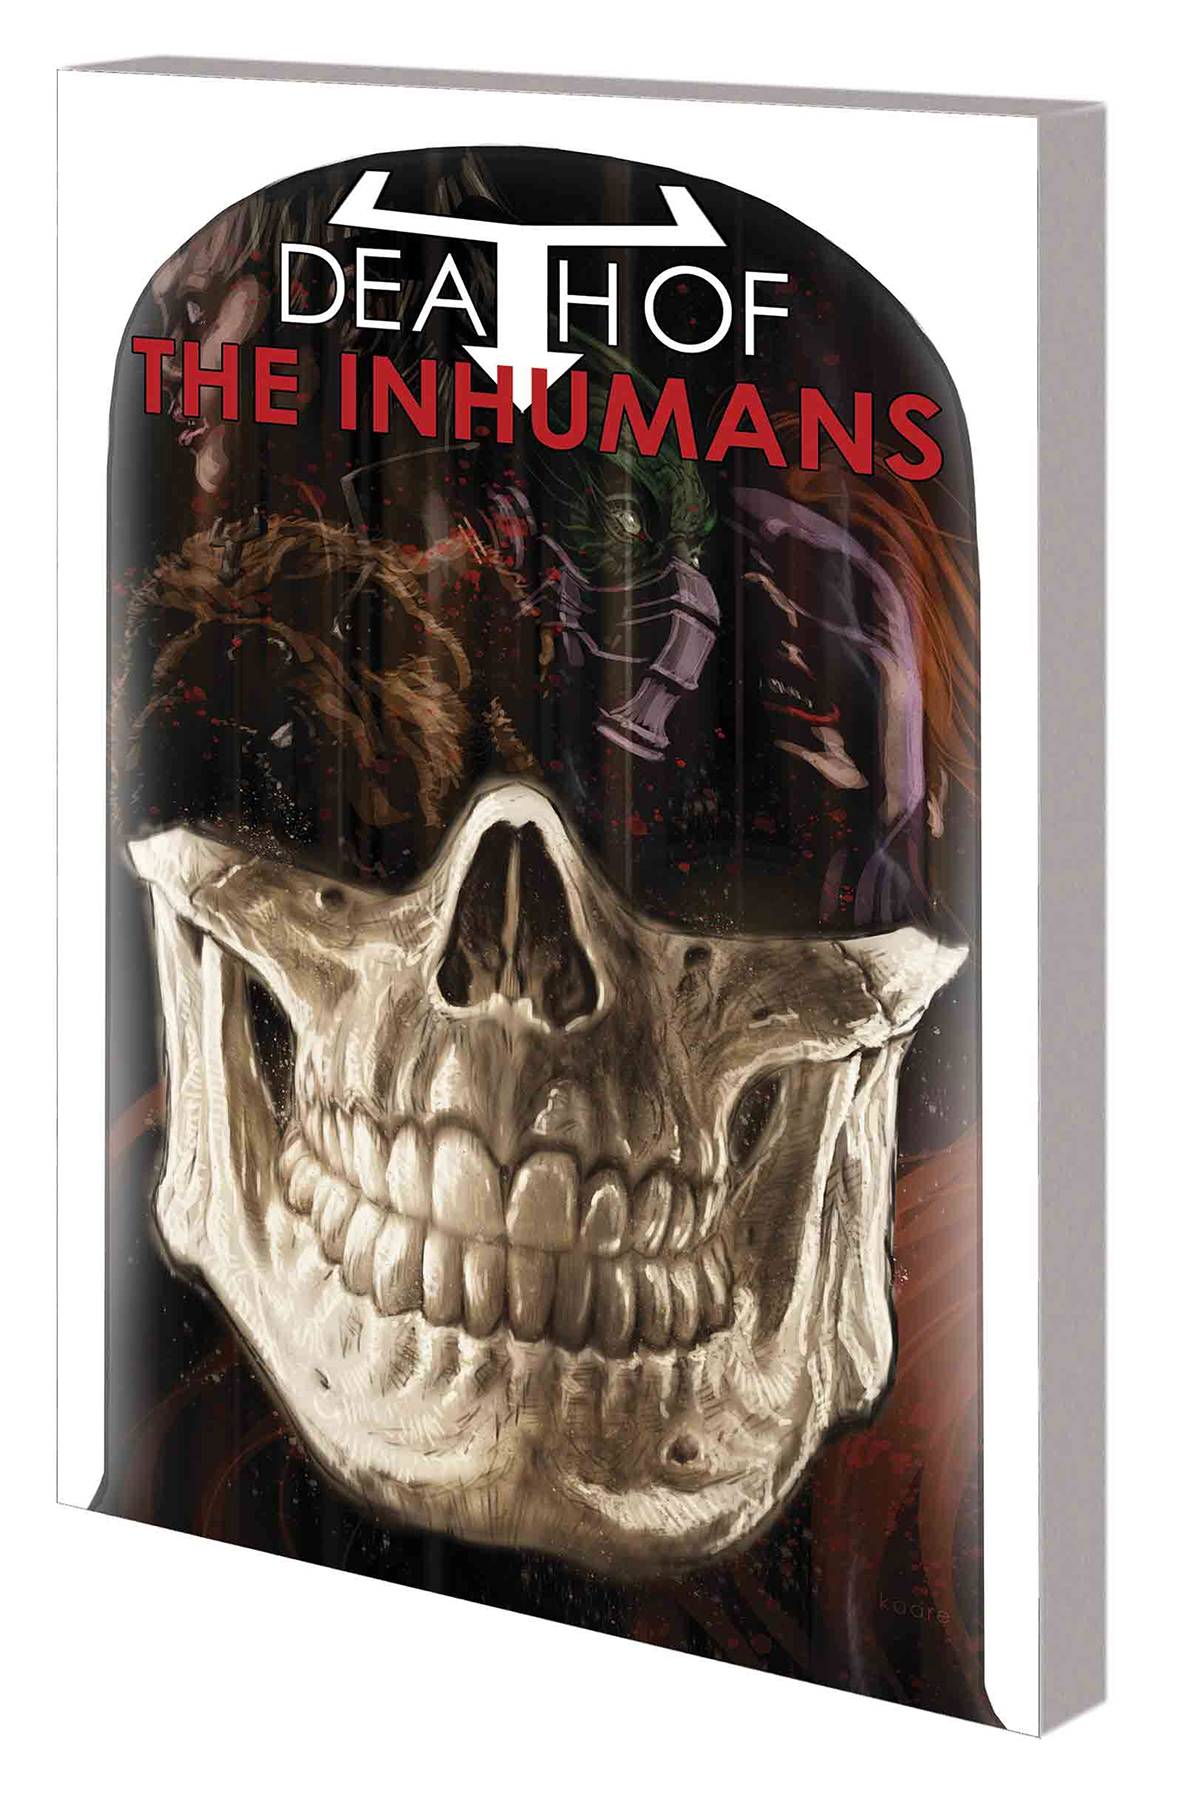 Death of Inhumans Graphic Novel